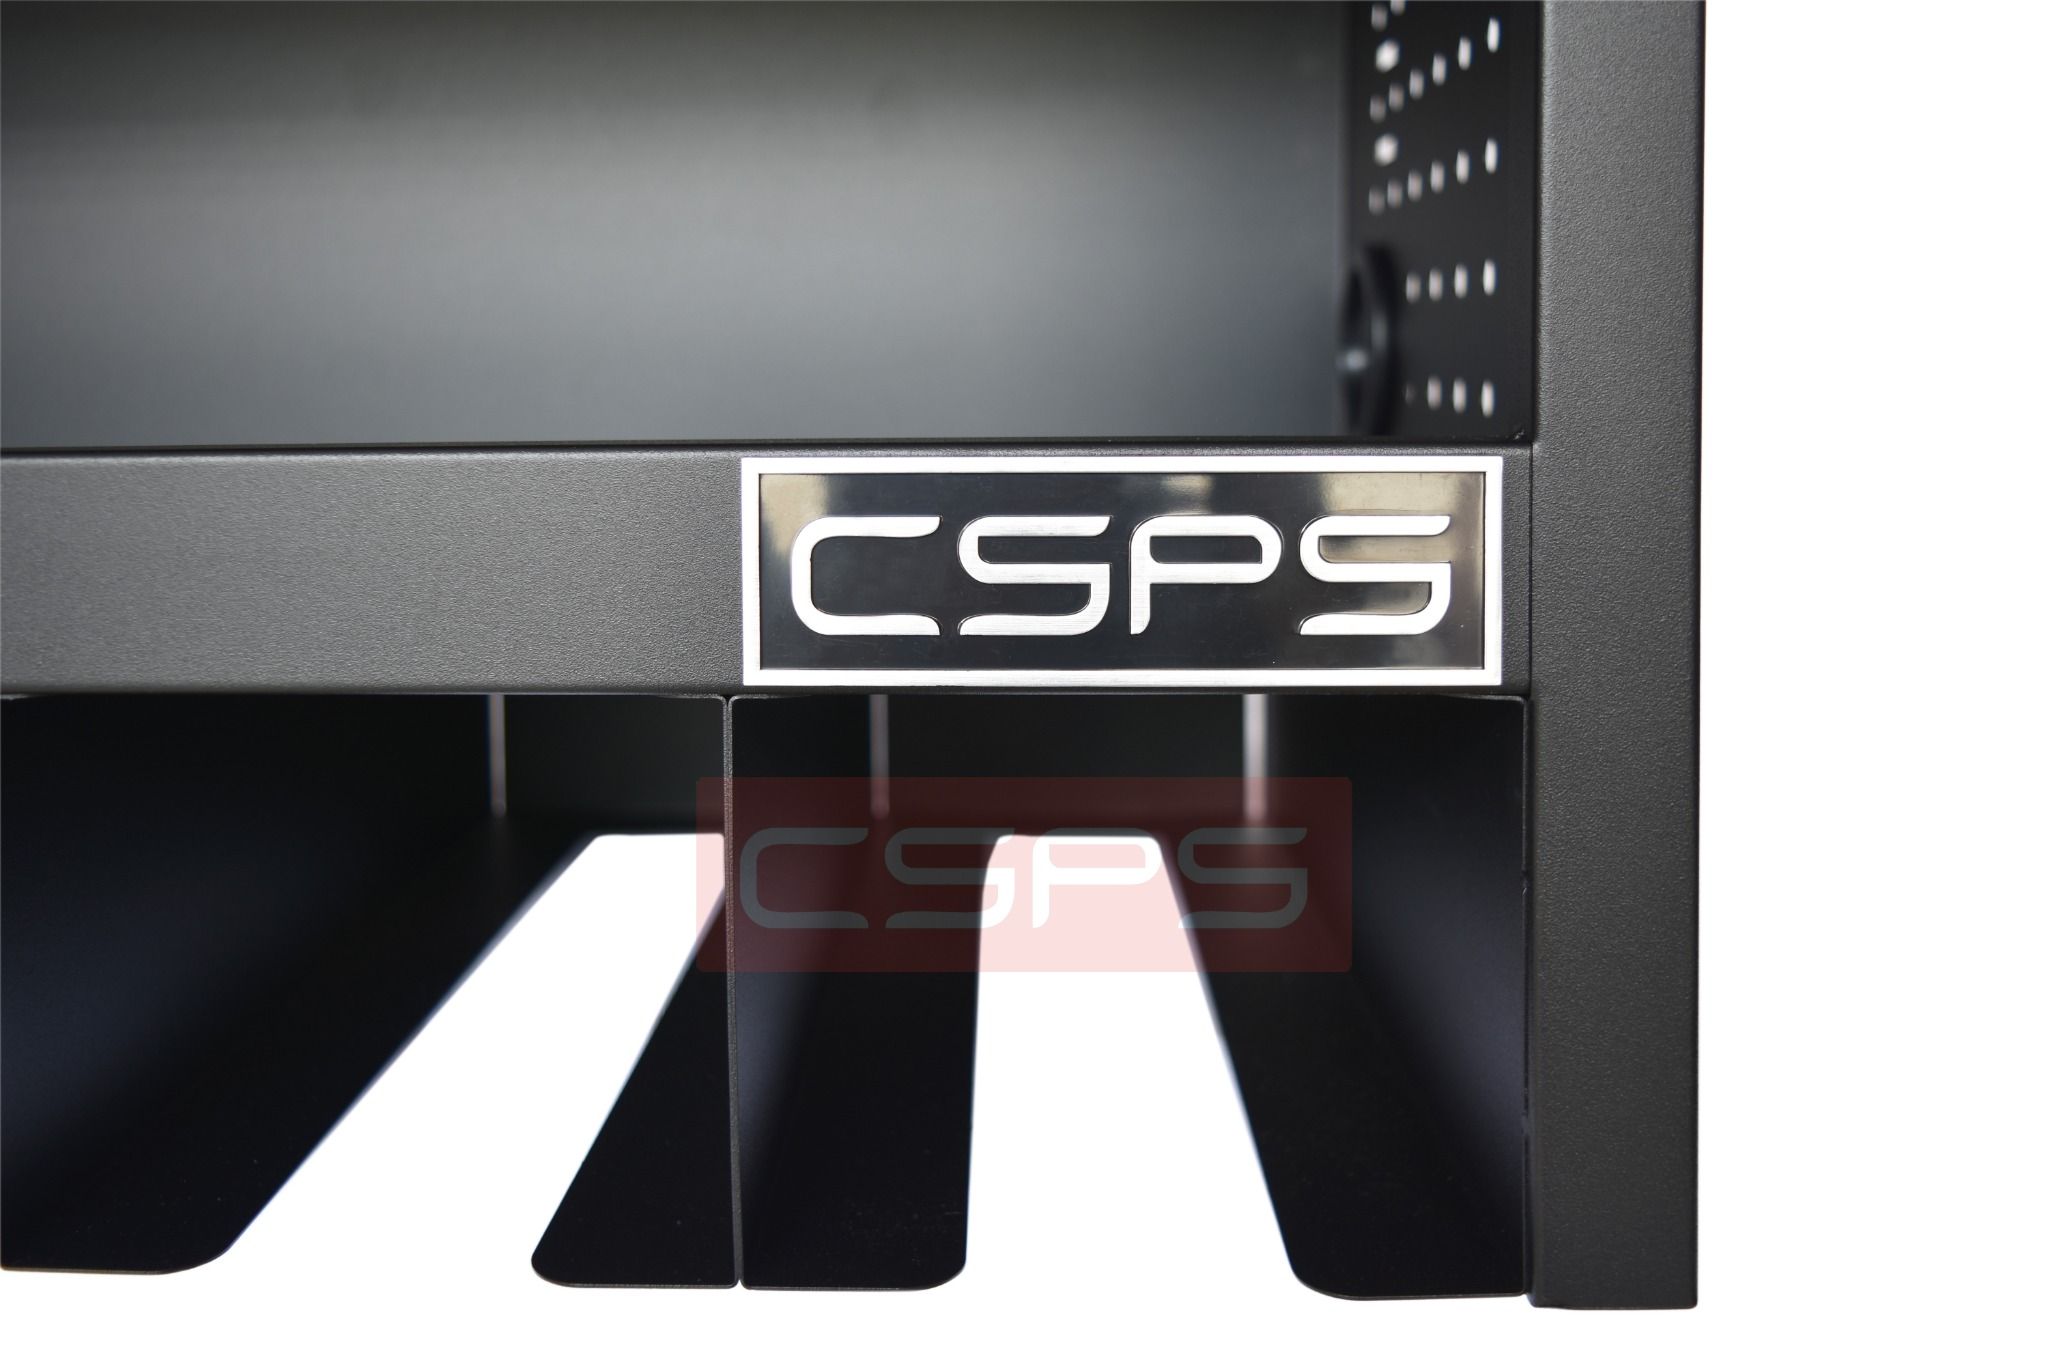  Tủ dụng cụ treo tường CSPS 76cm màu đen 